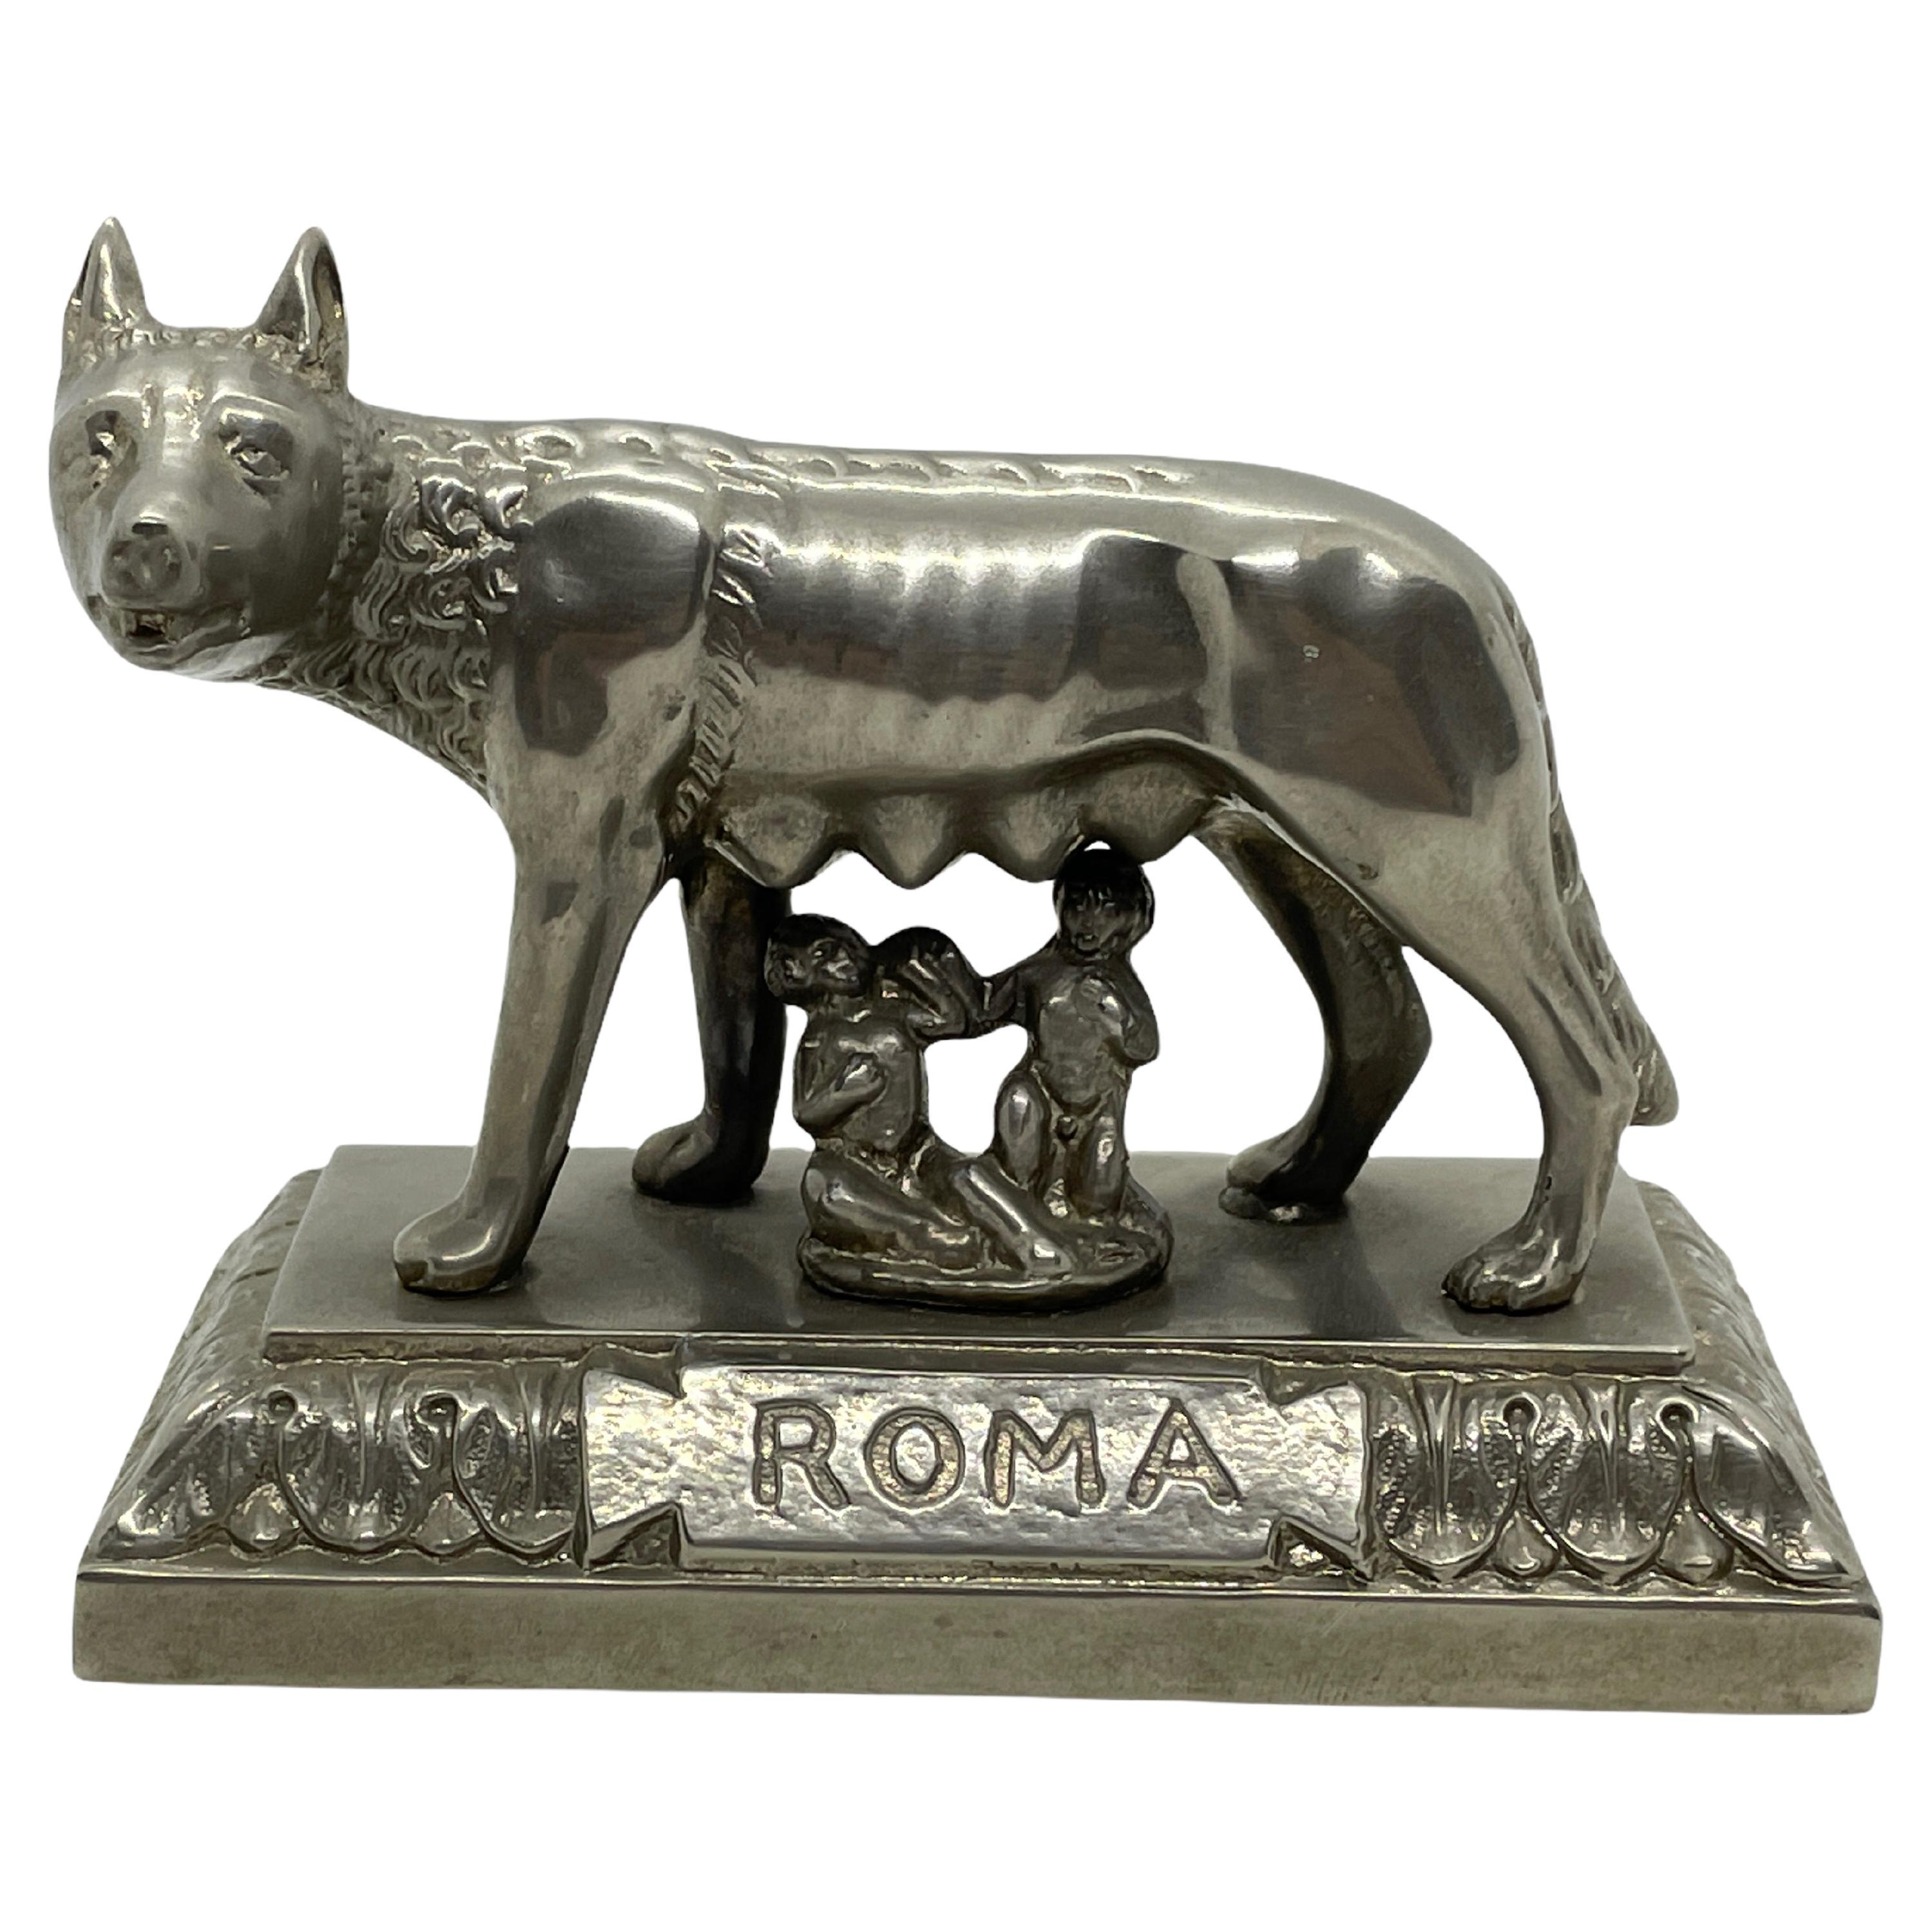 Loup de Rome Rome Romulus et Remus 1930s Souvenir Bâtiment Modèle Architectural